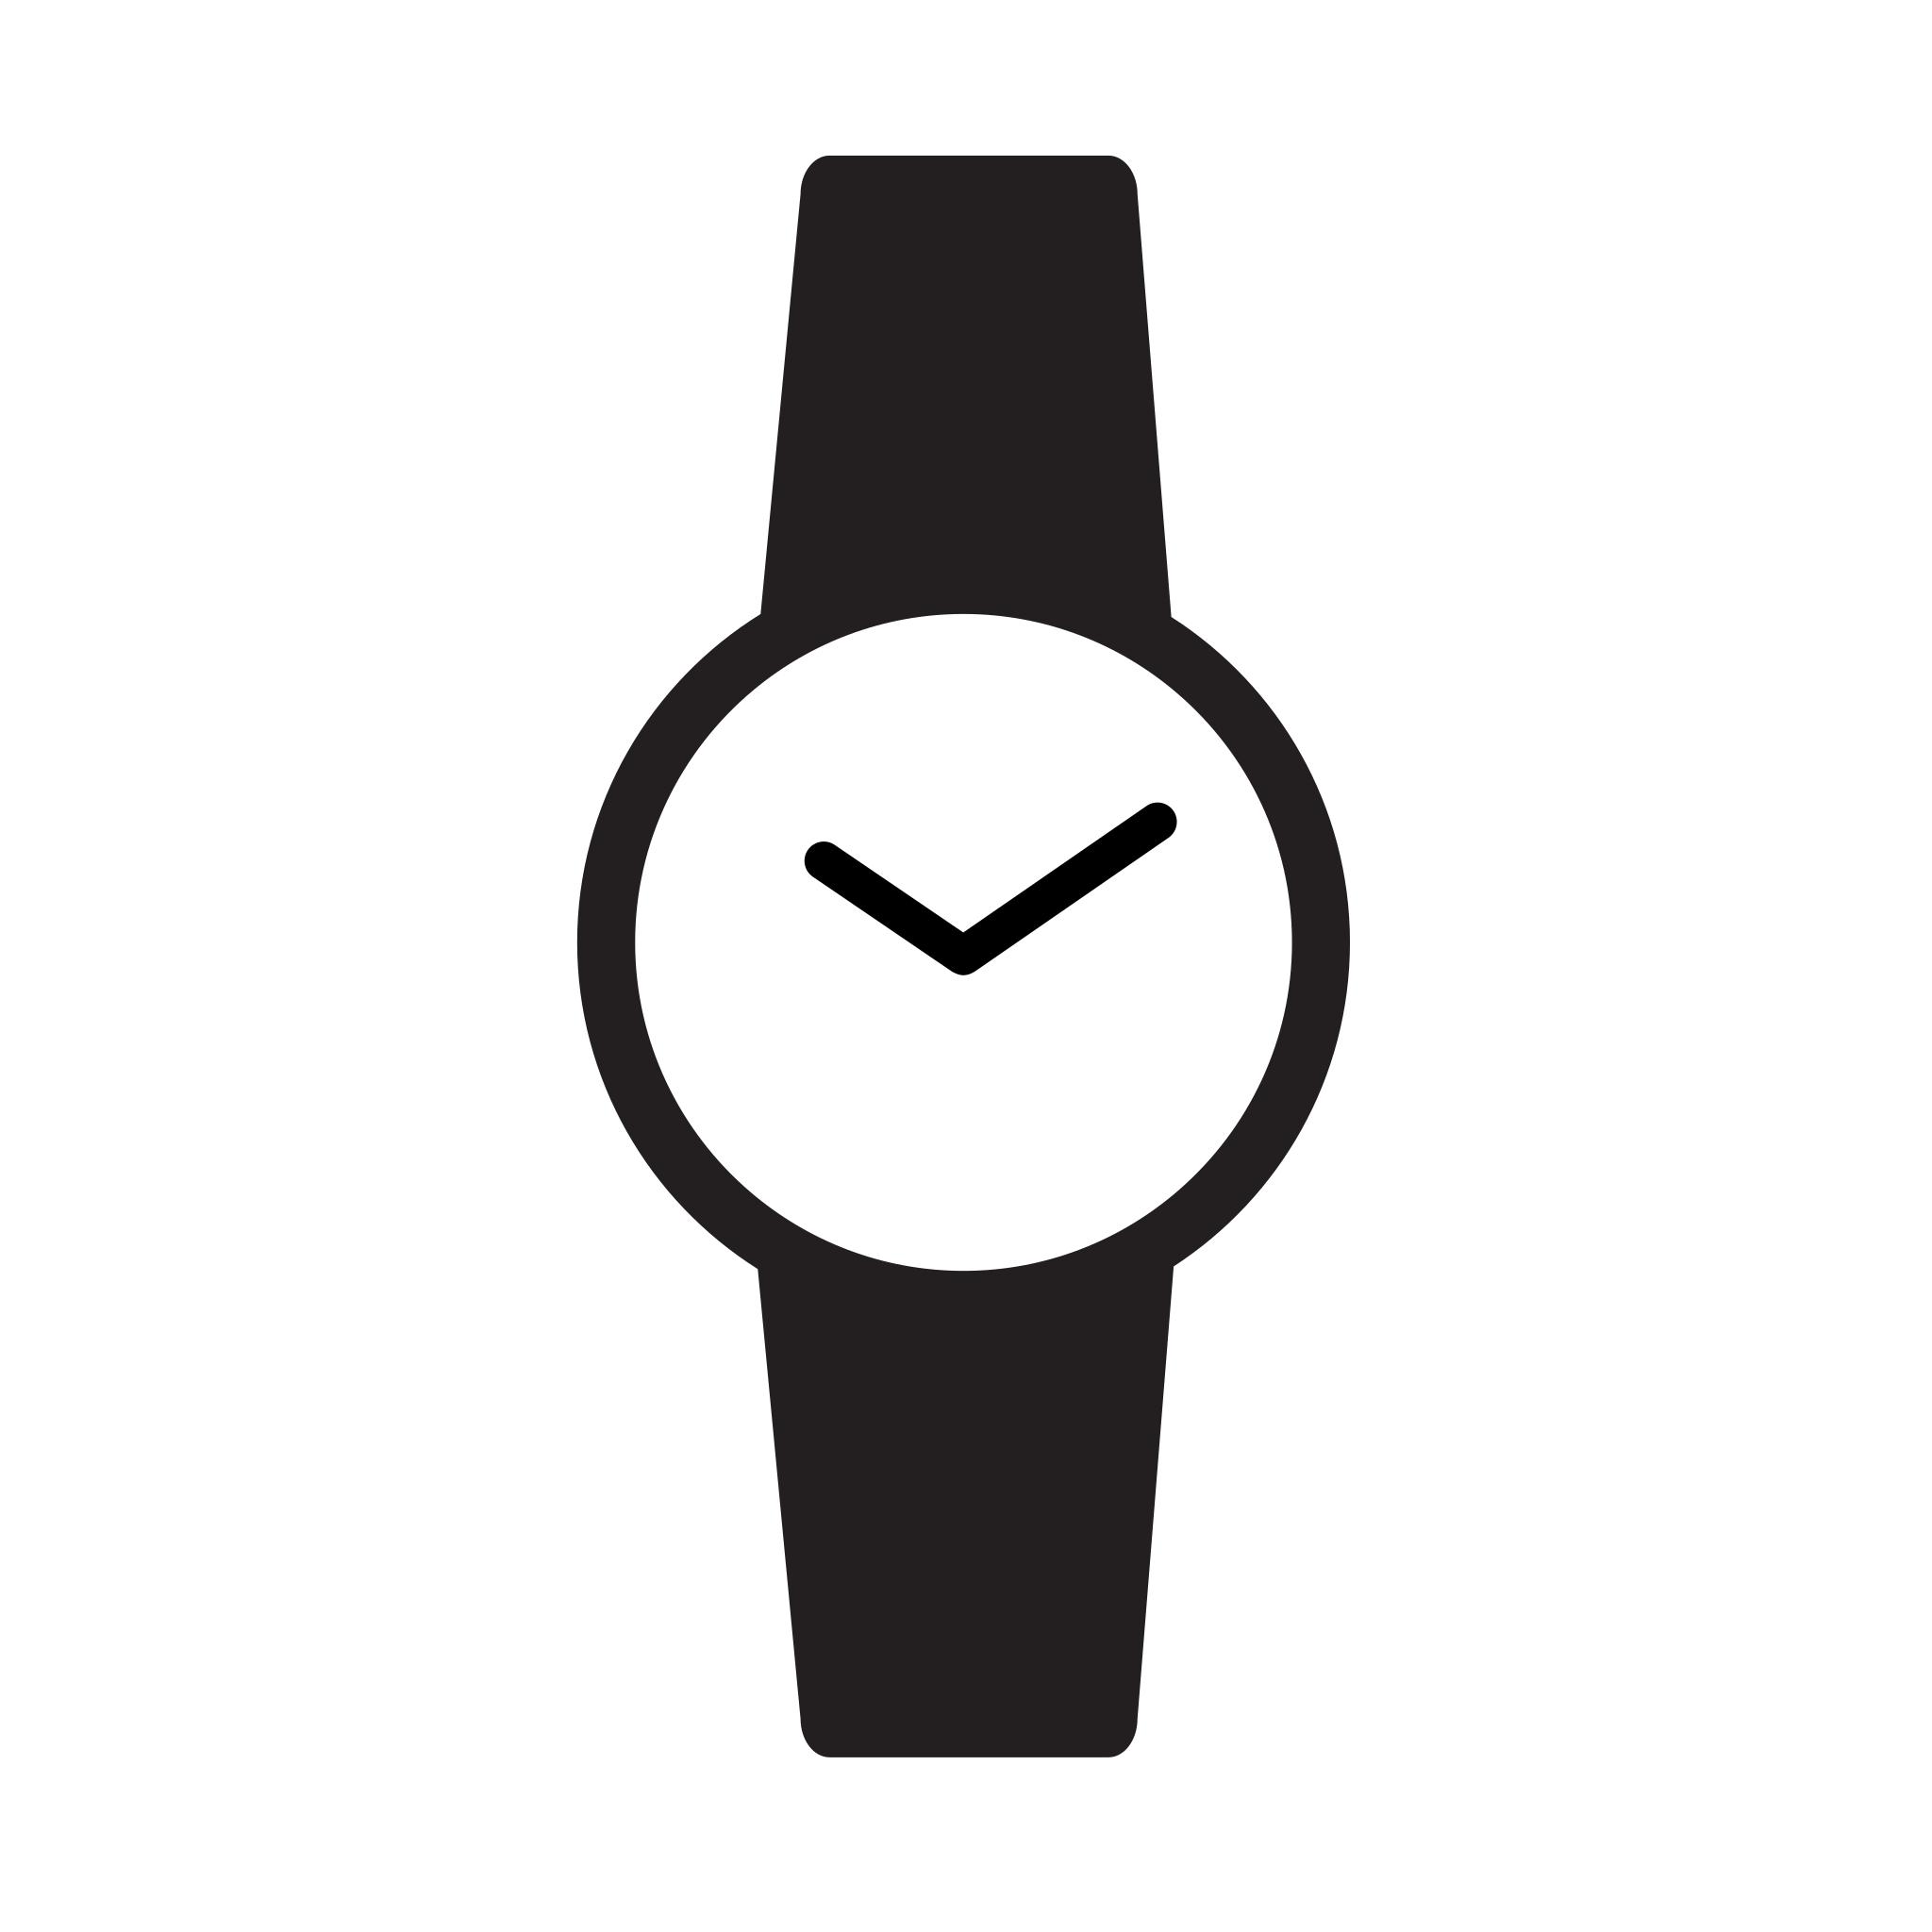 Логотипы наручных часов. Векторные наручные часы. Значок наручных часов. Пиктограмма часы наручные. Часы ручные иконка.